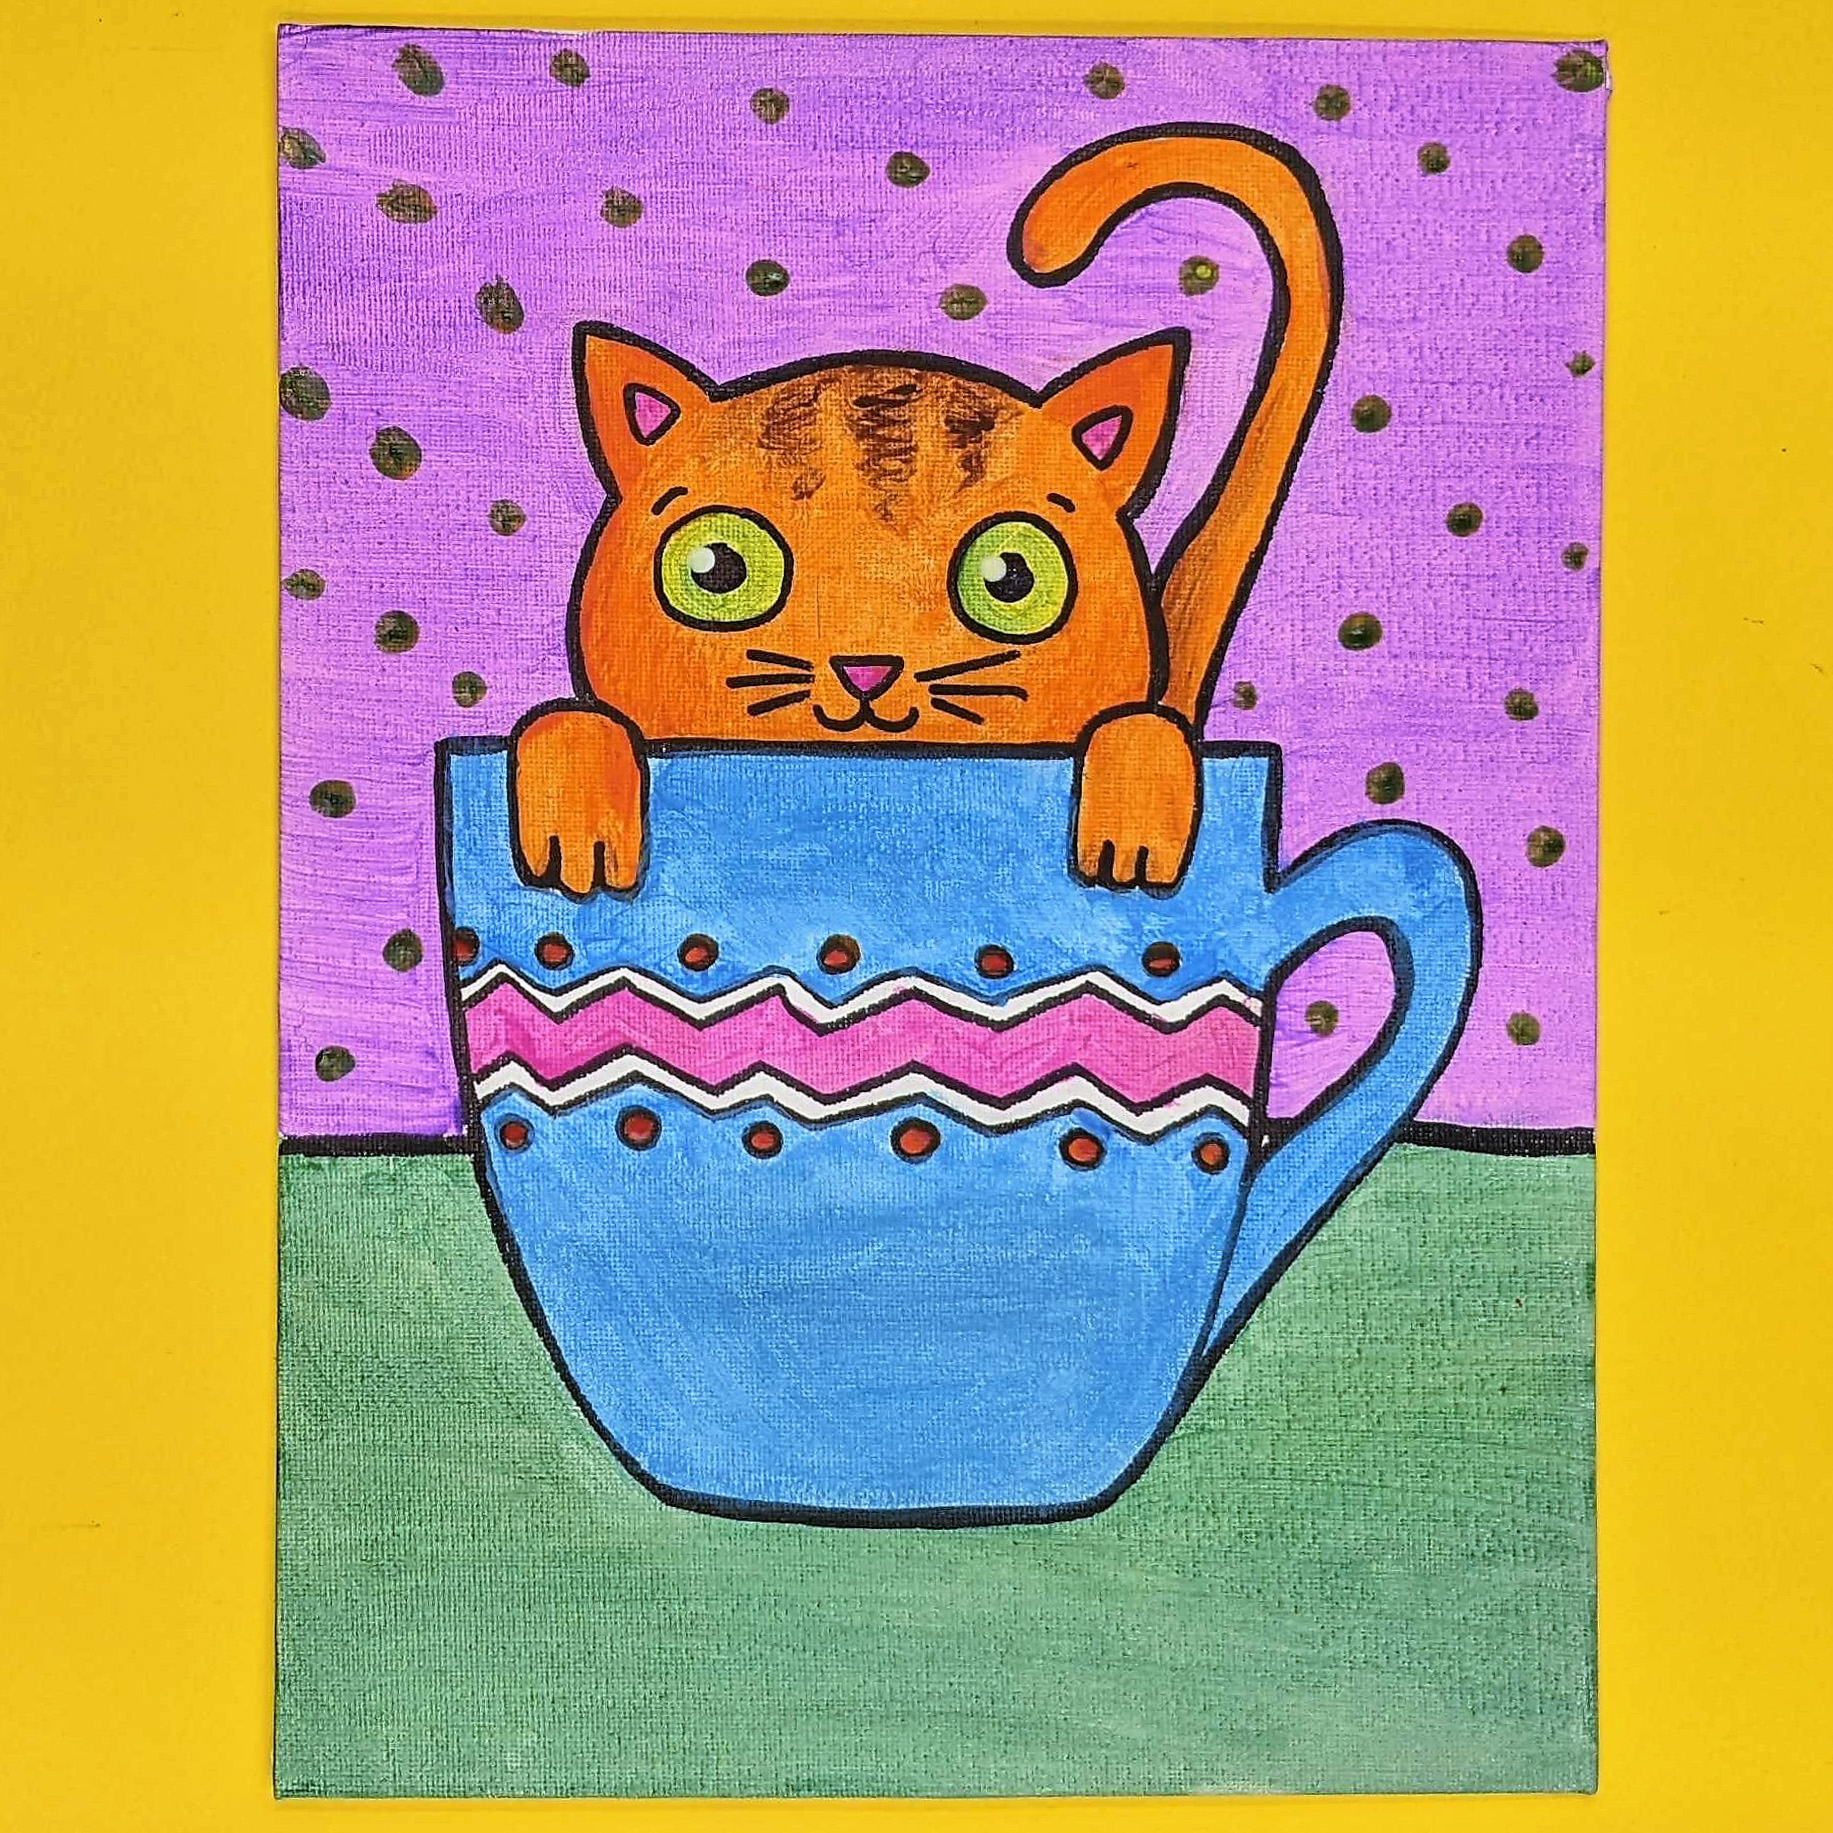 Kidcreate Studio - Ashburn, Teacup Kitten Art Project